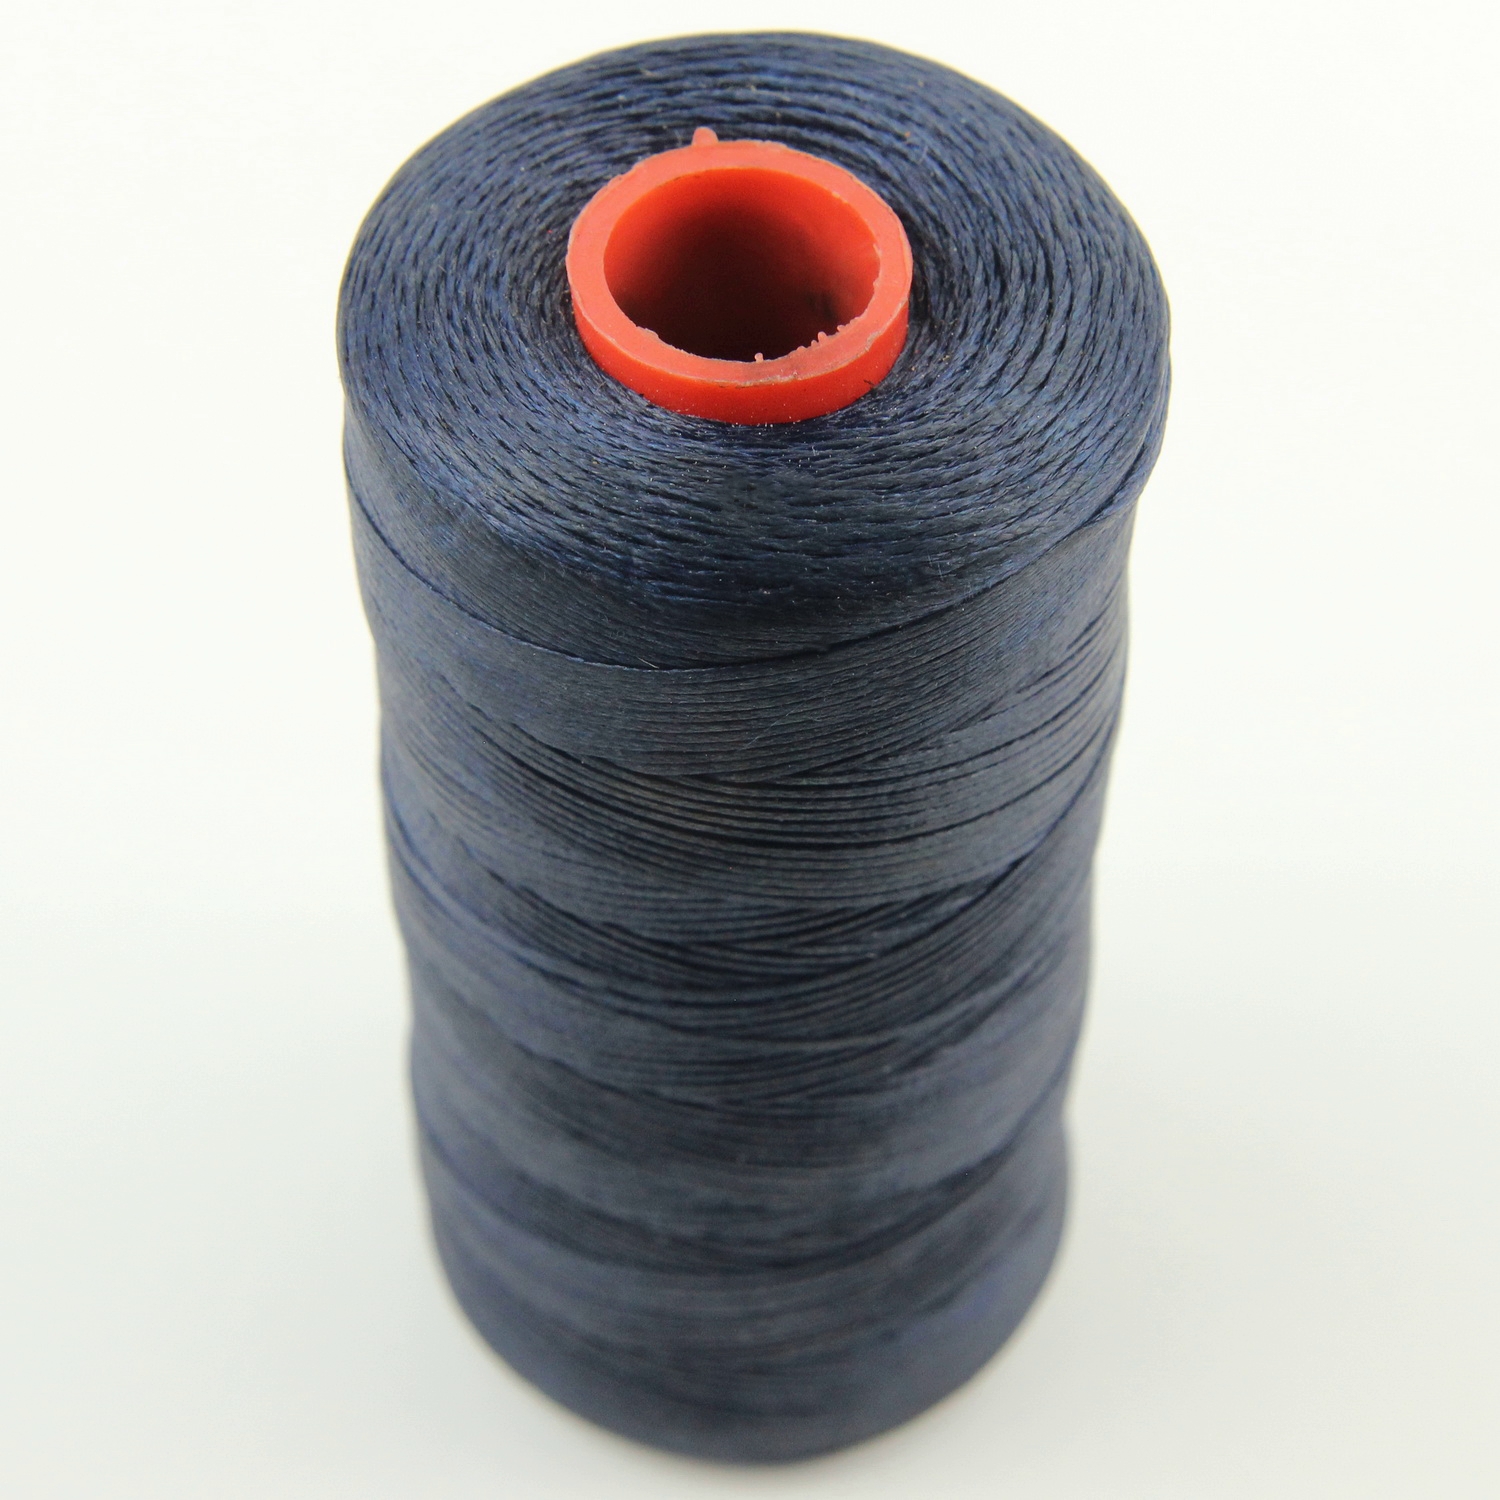 Нить для перетяжки руля вощеная (цвет темно-синий SIM 680), толщина 0.8 мм, длина 500 метров "Турция" детальная фотка